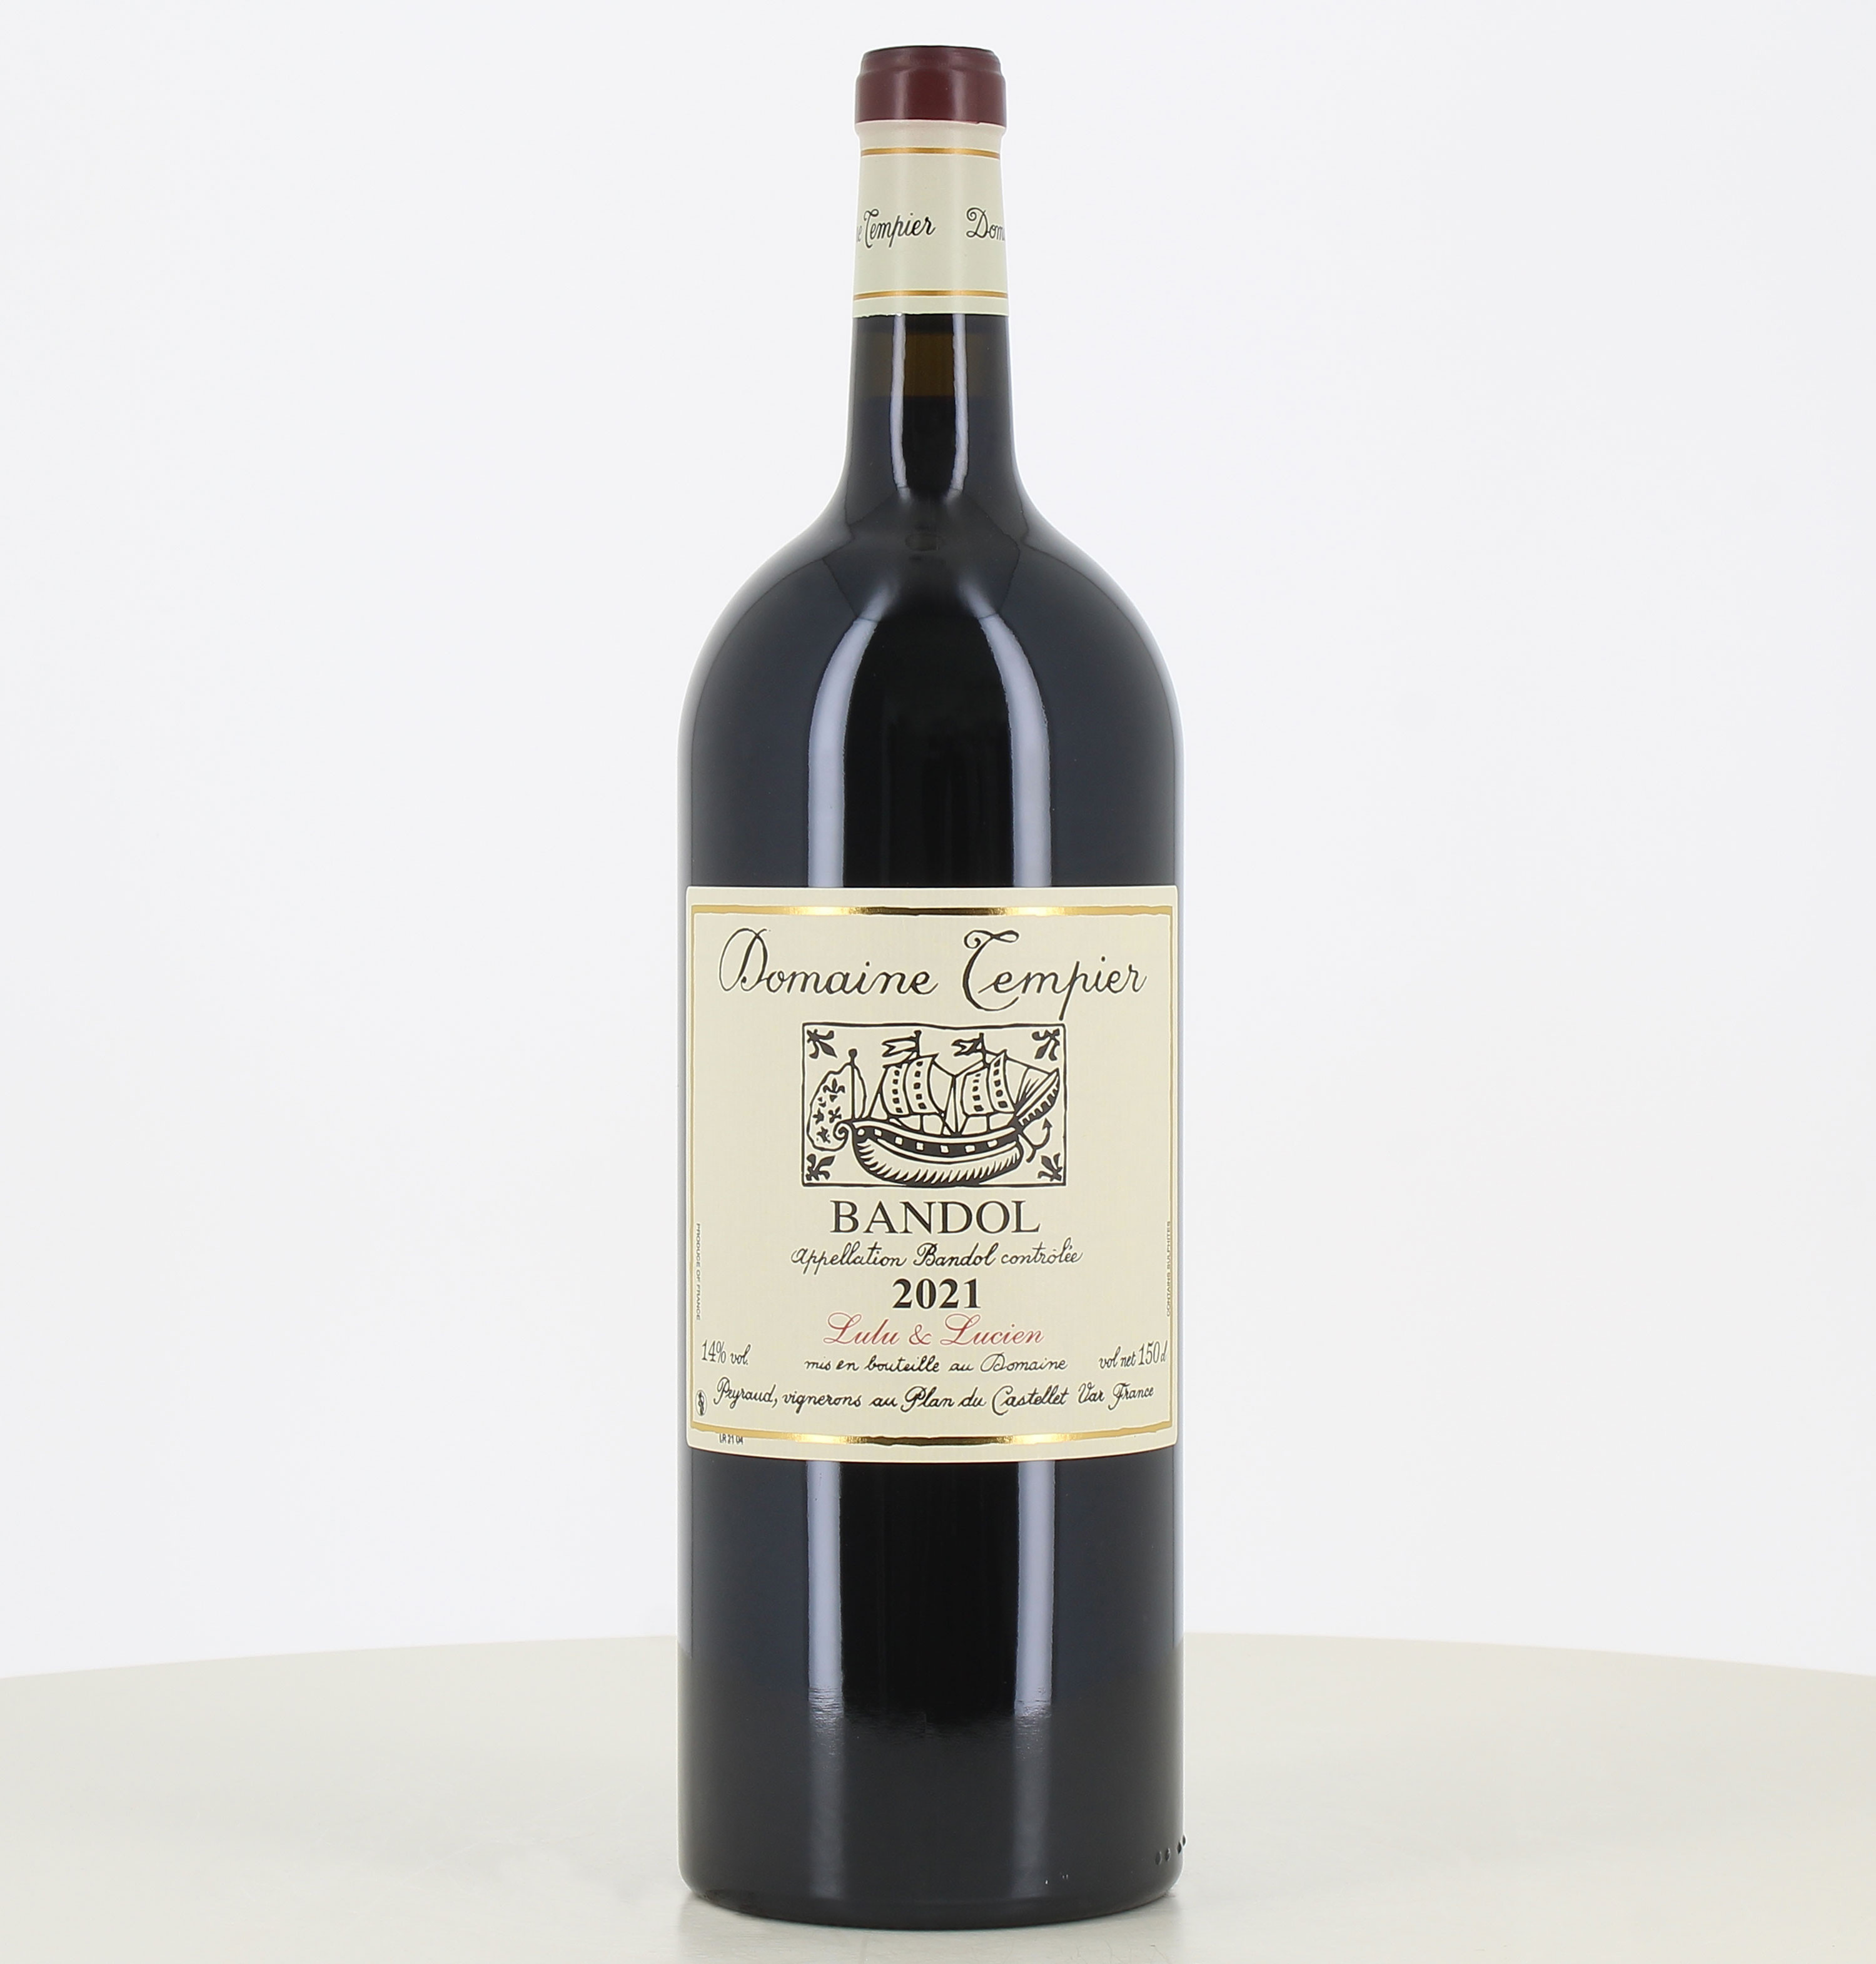 Magnum vino tinto Bandol Lulu & Lucien Domaine Tempier 2021 